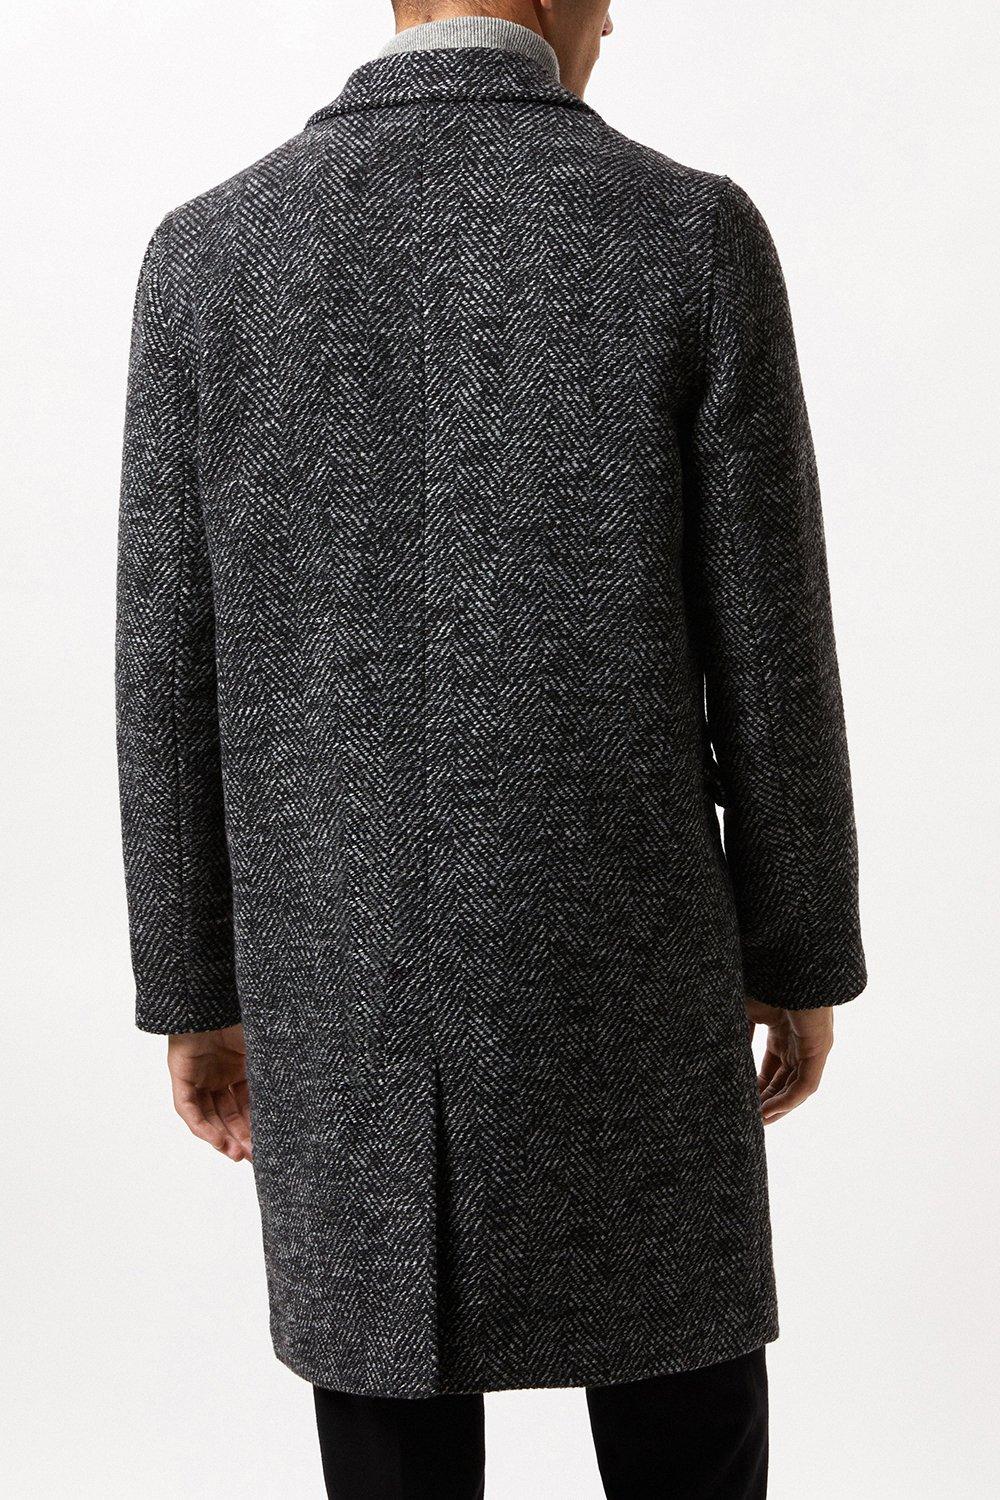 Herringbone Wool Blend Double Breasted Overcoat | Burton UK